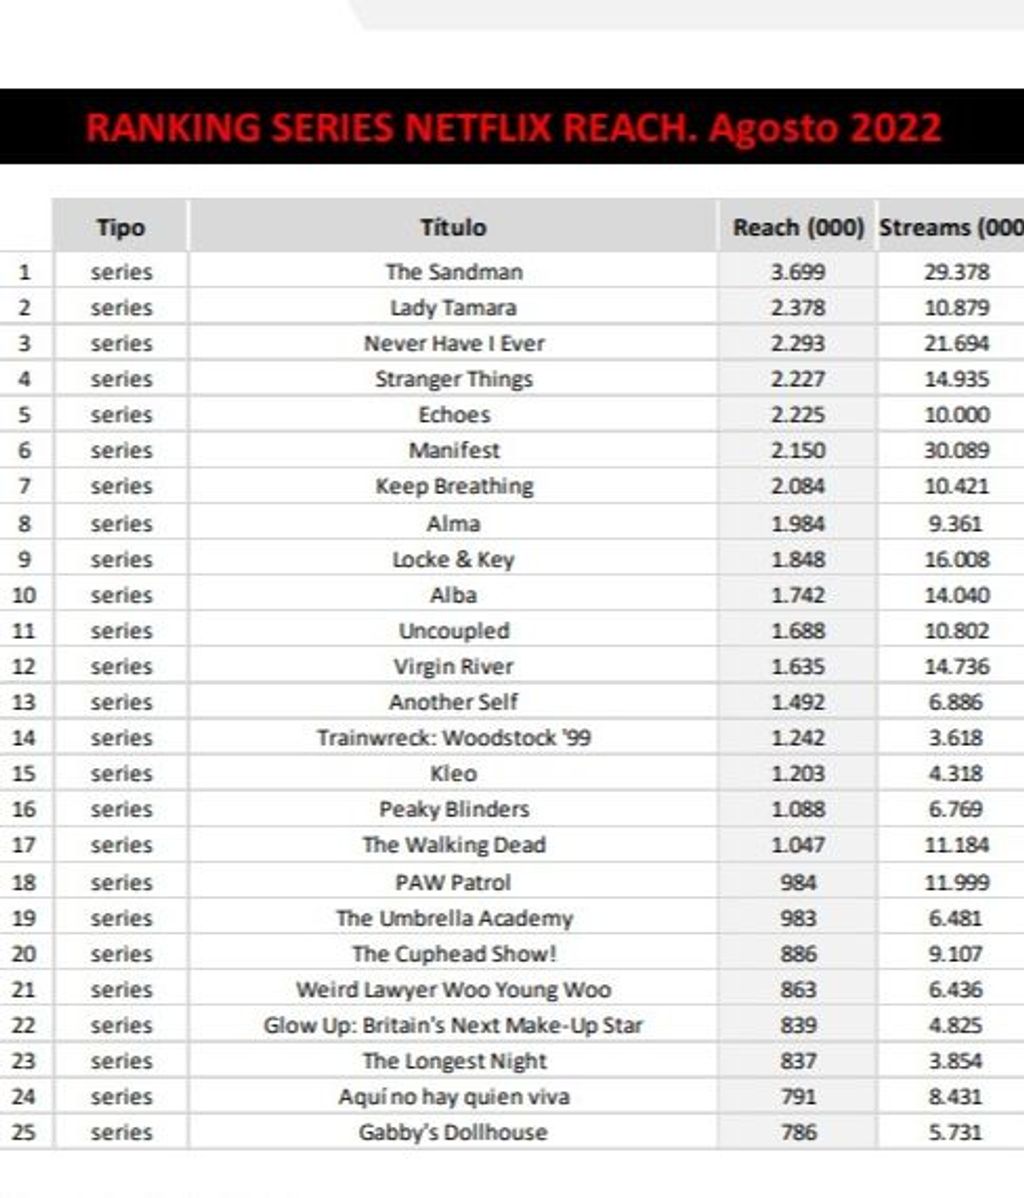 Ranking de series en Netflix España (reach), en agosto de 2022